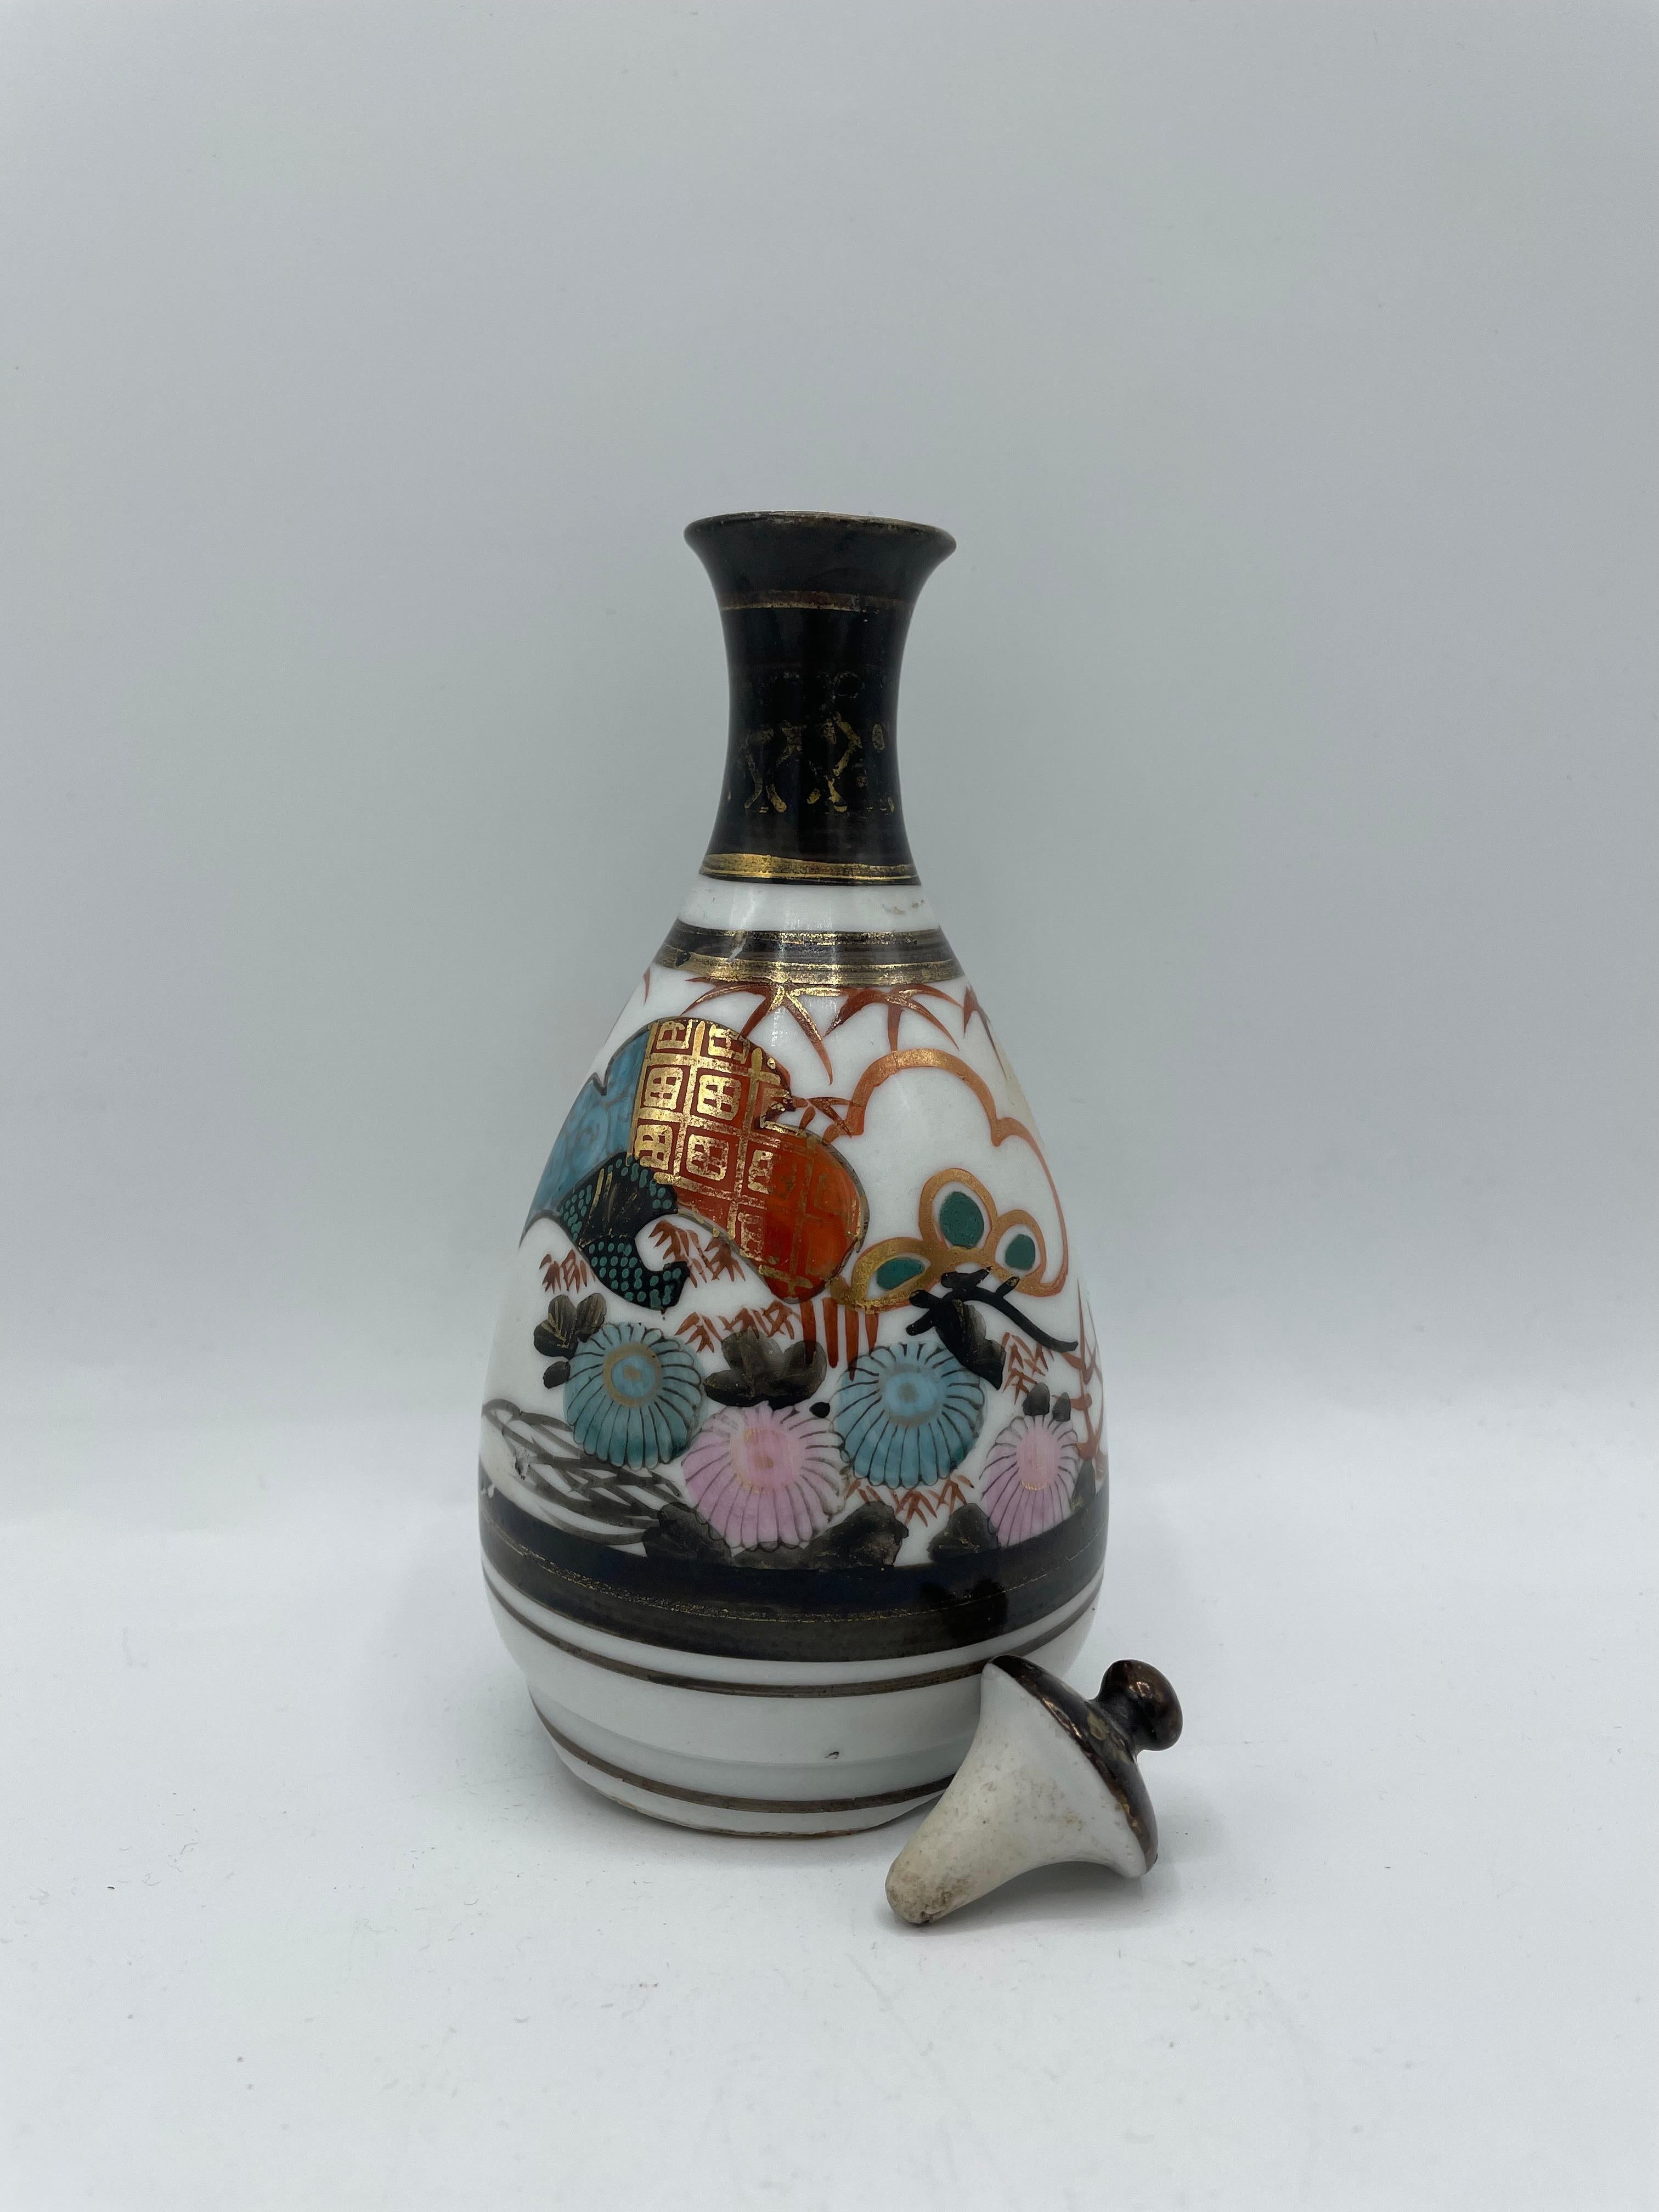 Dies ist eine Sake-Flasche, die auf Japanisch 'tokkuri' genannt wird.
Diese Tokkuri besteht aus Porzellan und ist handbemalt.
Es wurde in der Showa-Ära in den 1970er Jahren hergestellt.
Das Design ist die Landschaft der japanischen Tsuru-Vögel und